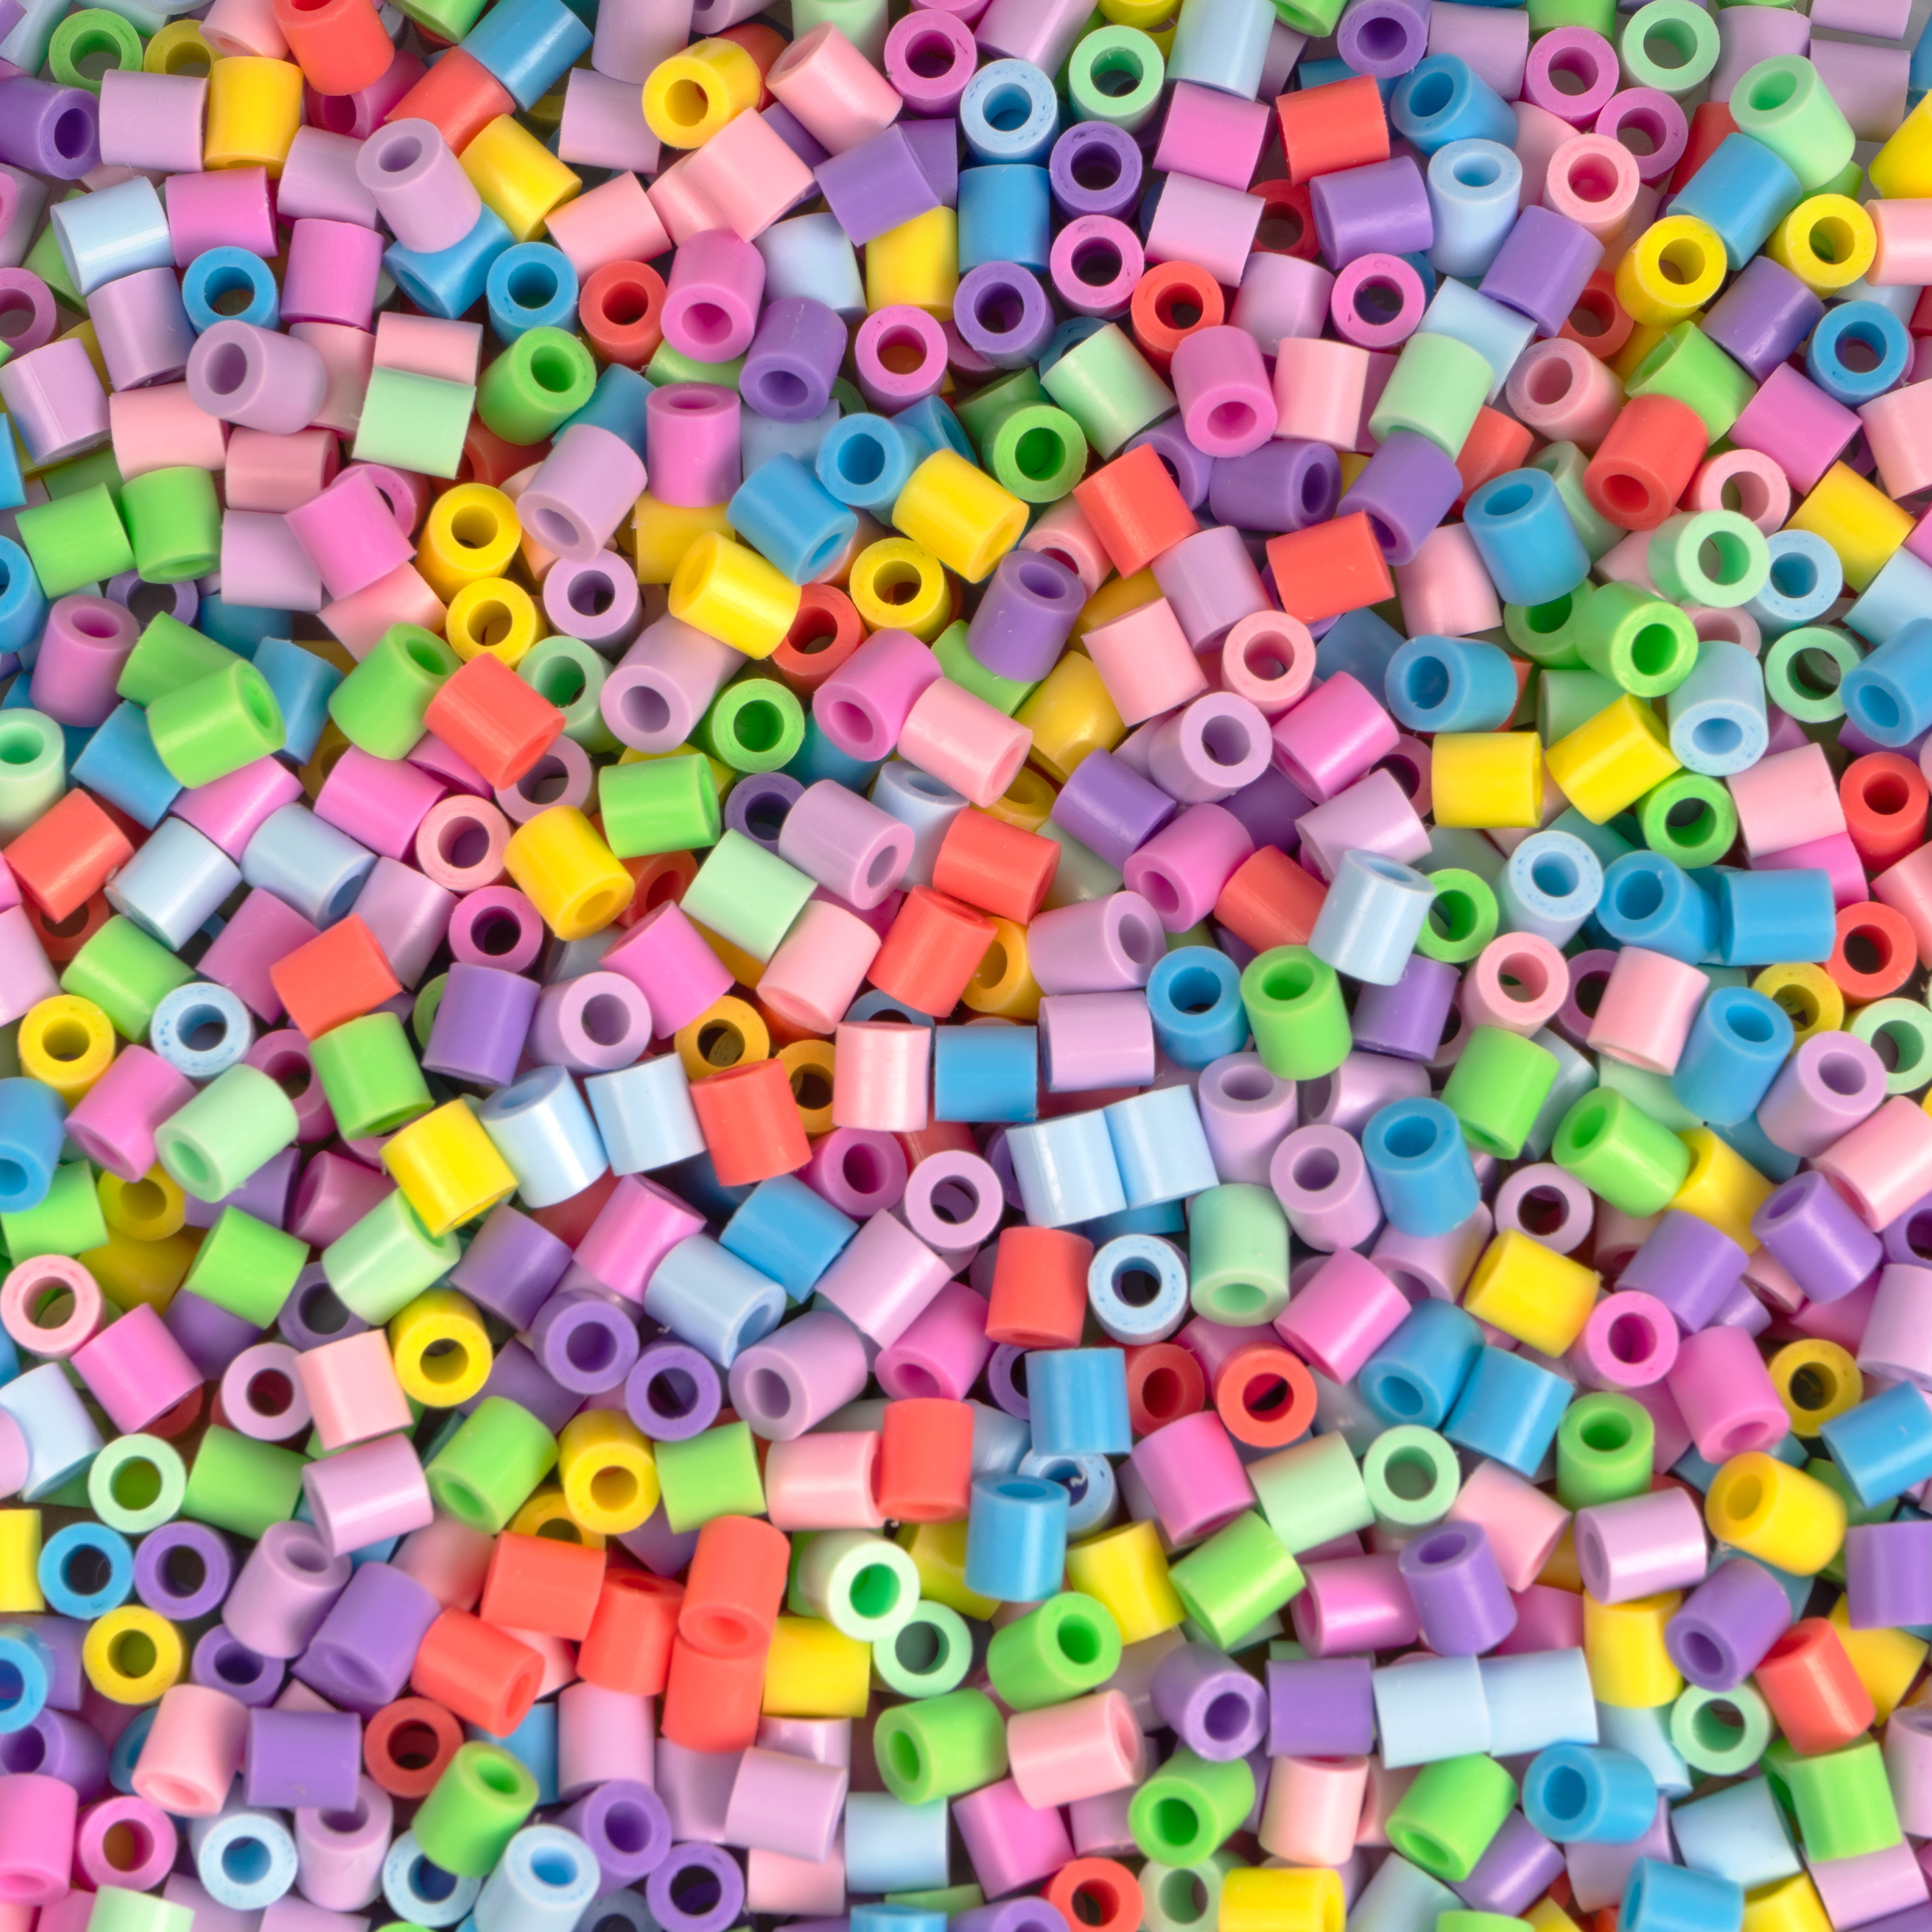 HAMA Beutel mit 6000 Bügelperlen im Pastellmix